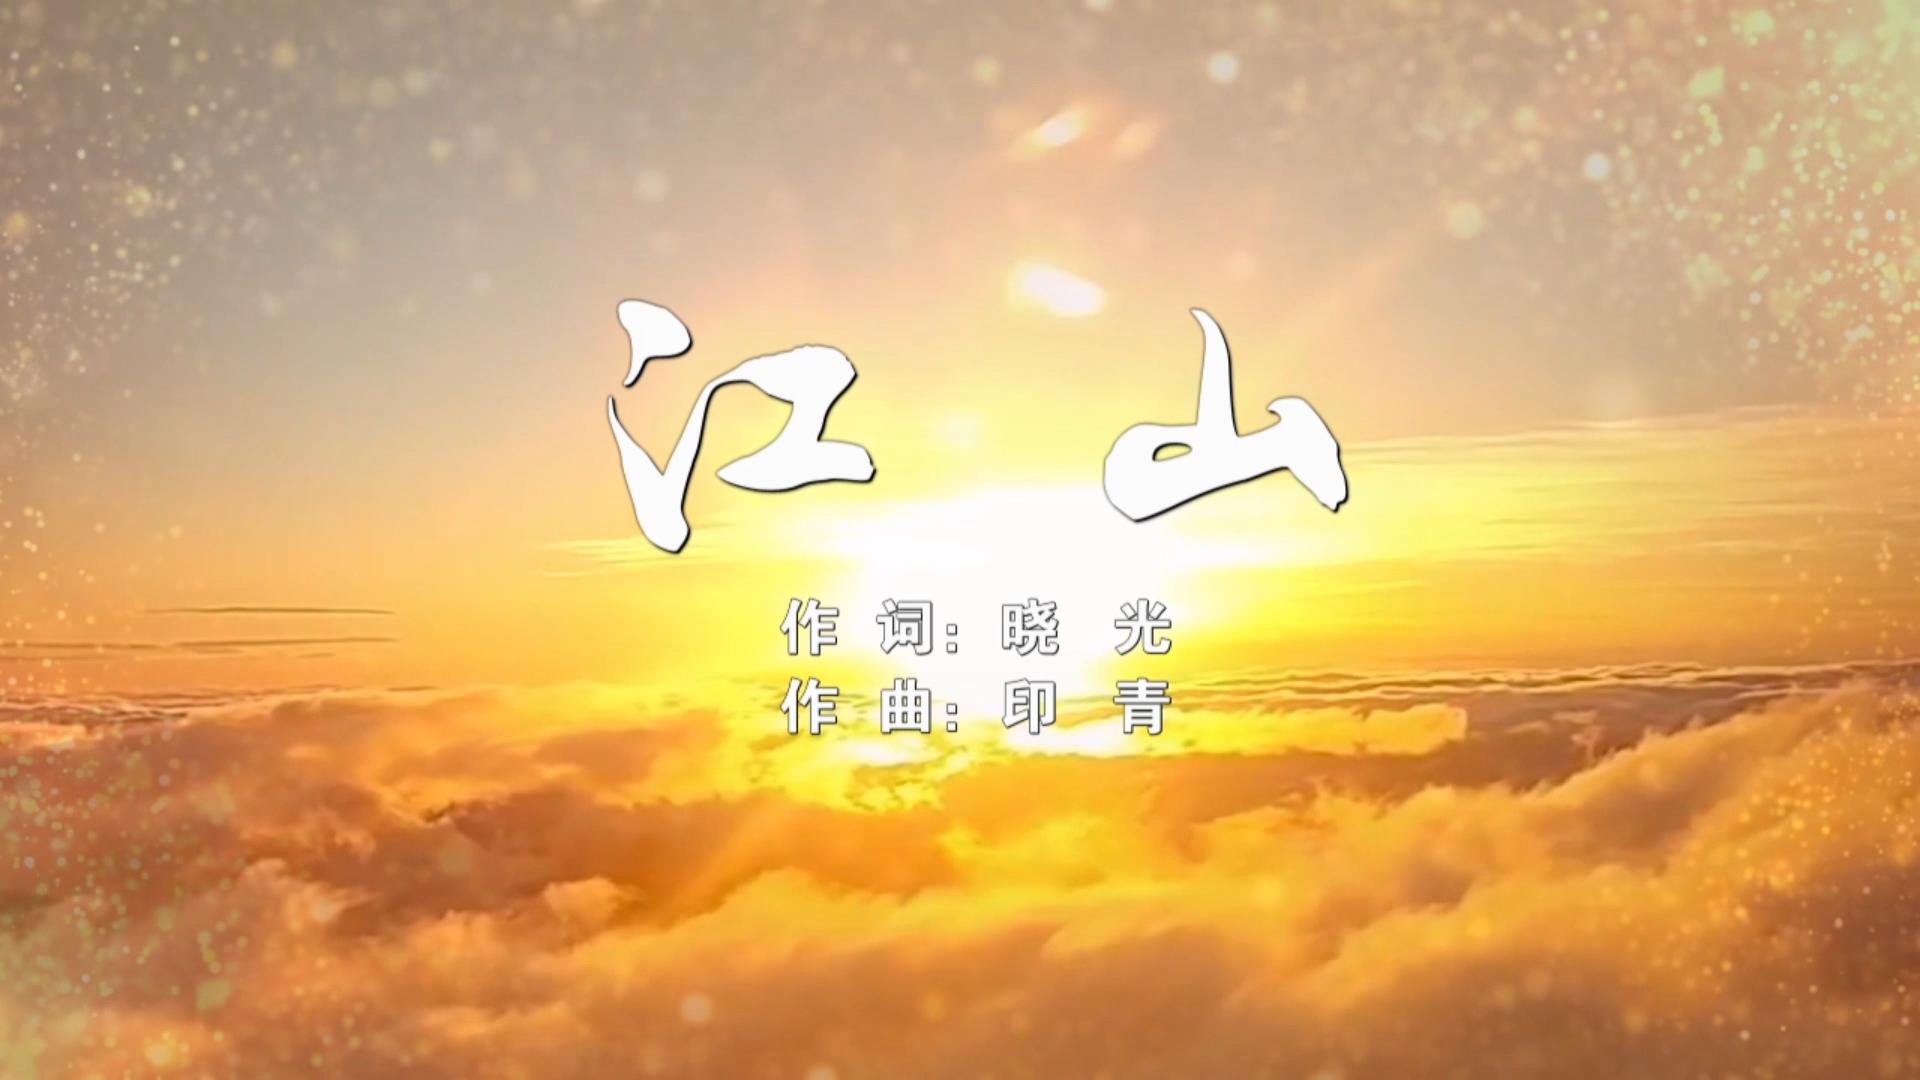 江山MV字幕配乐伴奏舞台演出LED背景大屏幕视频素